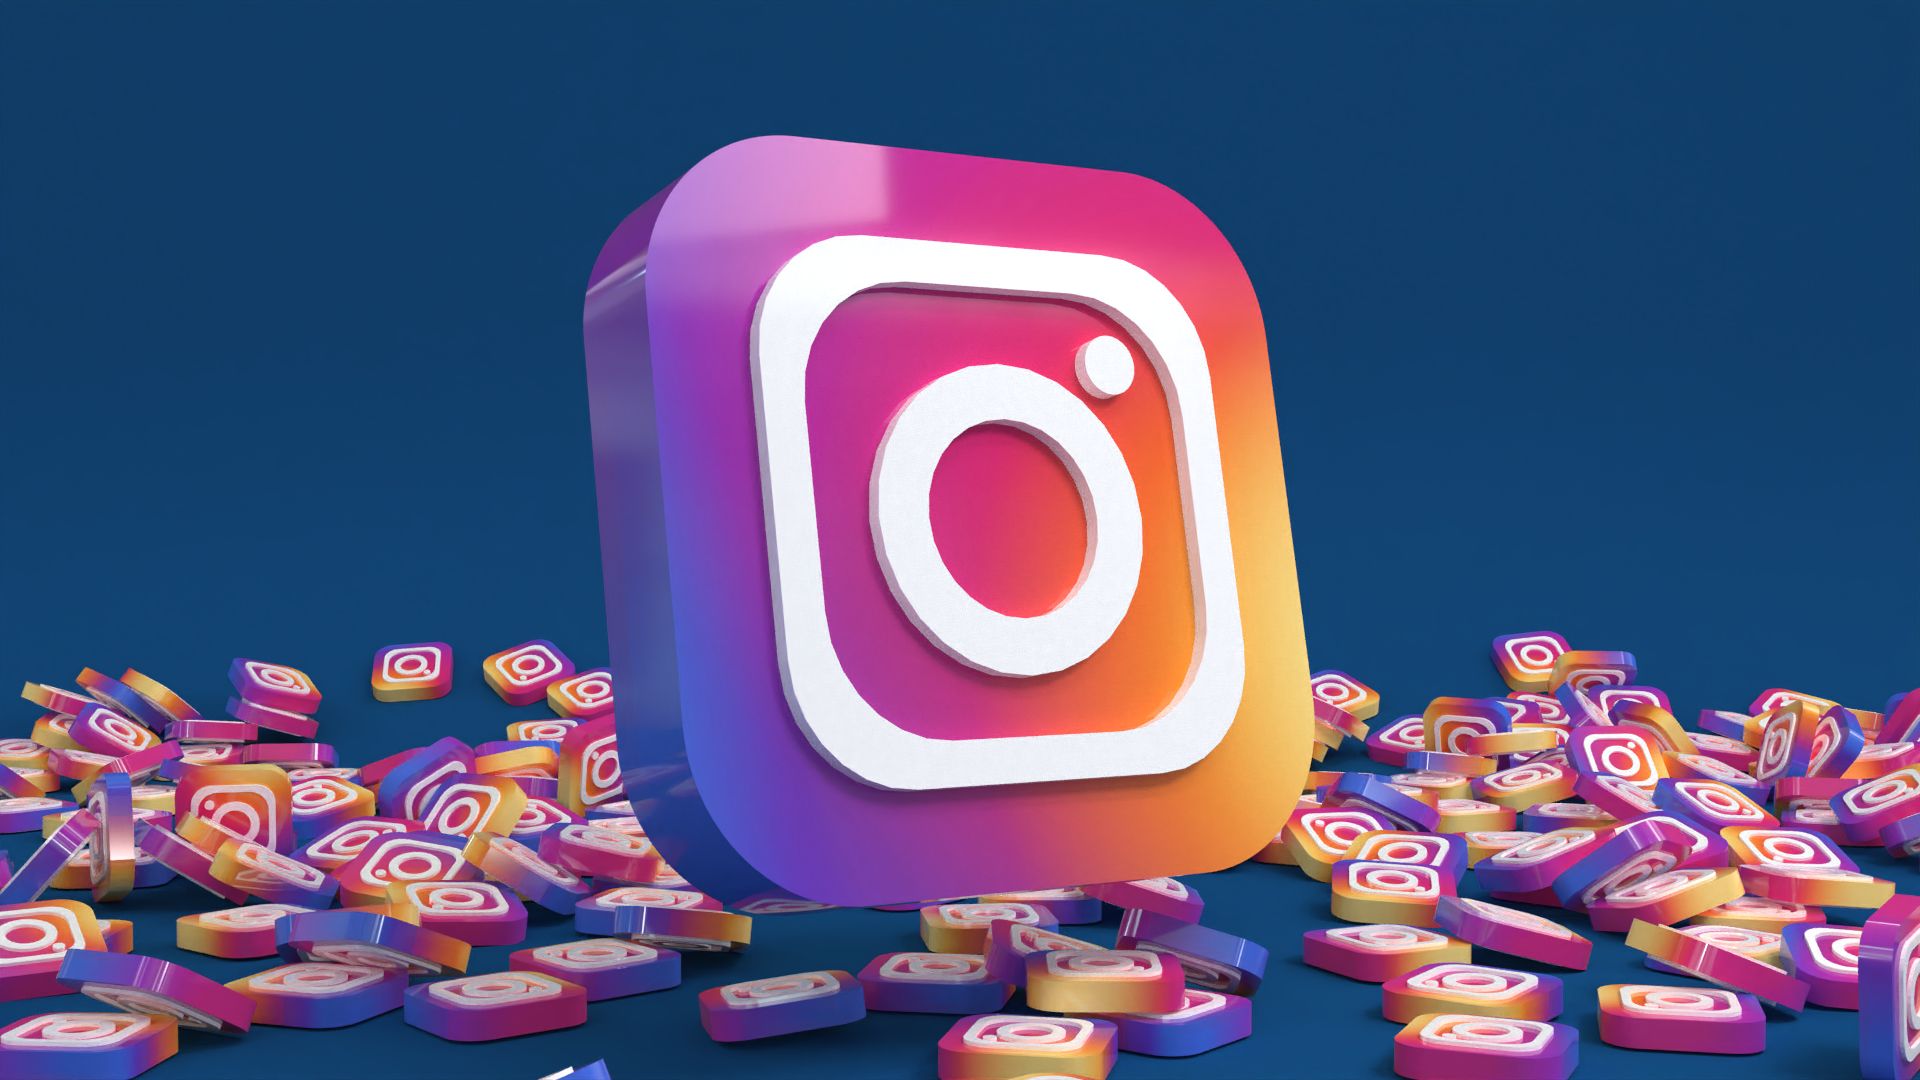 Hình nền Instagram là một cách tuyệt vời để trang trí điện thoại của bạn. Với hàng ngàn hình ảnh đa dạng và đẹp mắt, bạn sẽ không bao giờ cảm thấy nhàm chán khi sử dụng điện thoại của mình. Hãy tải về ngay để cập nhật hình ảnh mới nhất. 